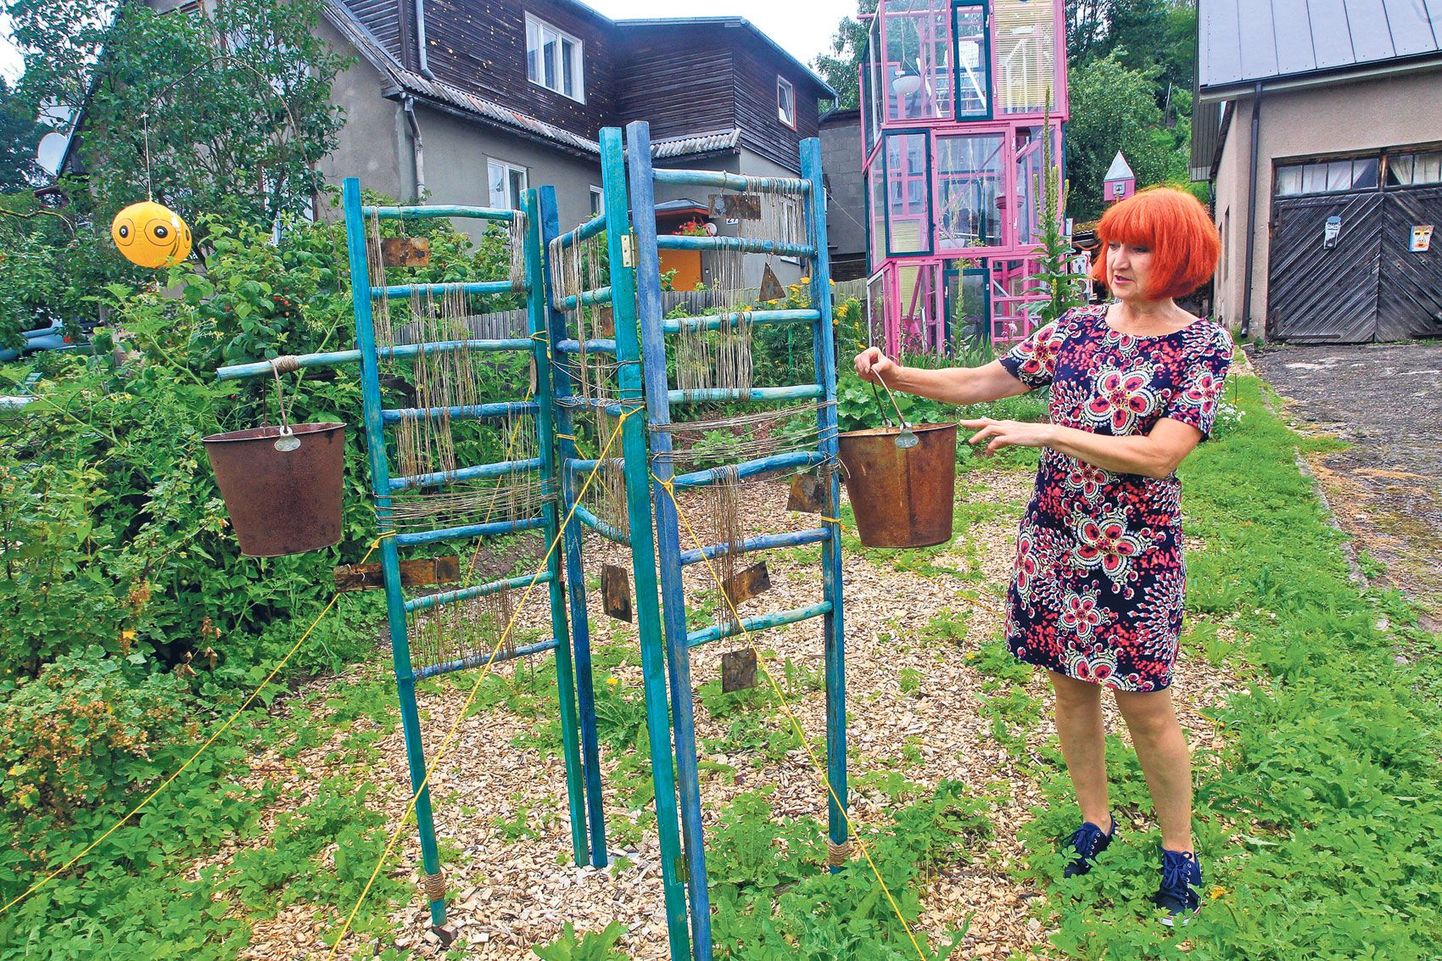 Kunstnike liidu liige aastast 1988, tartlannast kunstiõppejõud Imbi Kruuv on oma aeda Ujula 25 kureerinud näituse «Flirt aiaga». Enne Tiiu Kirsipuu installatsiooni «Sirm II» (esiplaanil) tutvustamist rääkis ta kolmekorruselist kasvuhoonet meenutavast «Rapunsa paviljonist» (autor Eneli Valge).